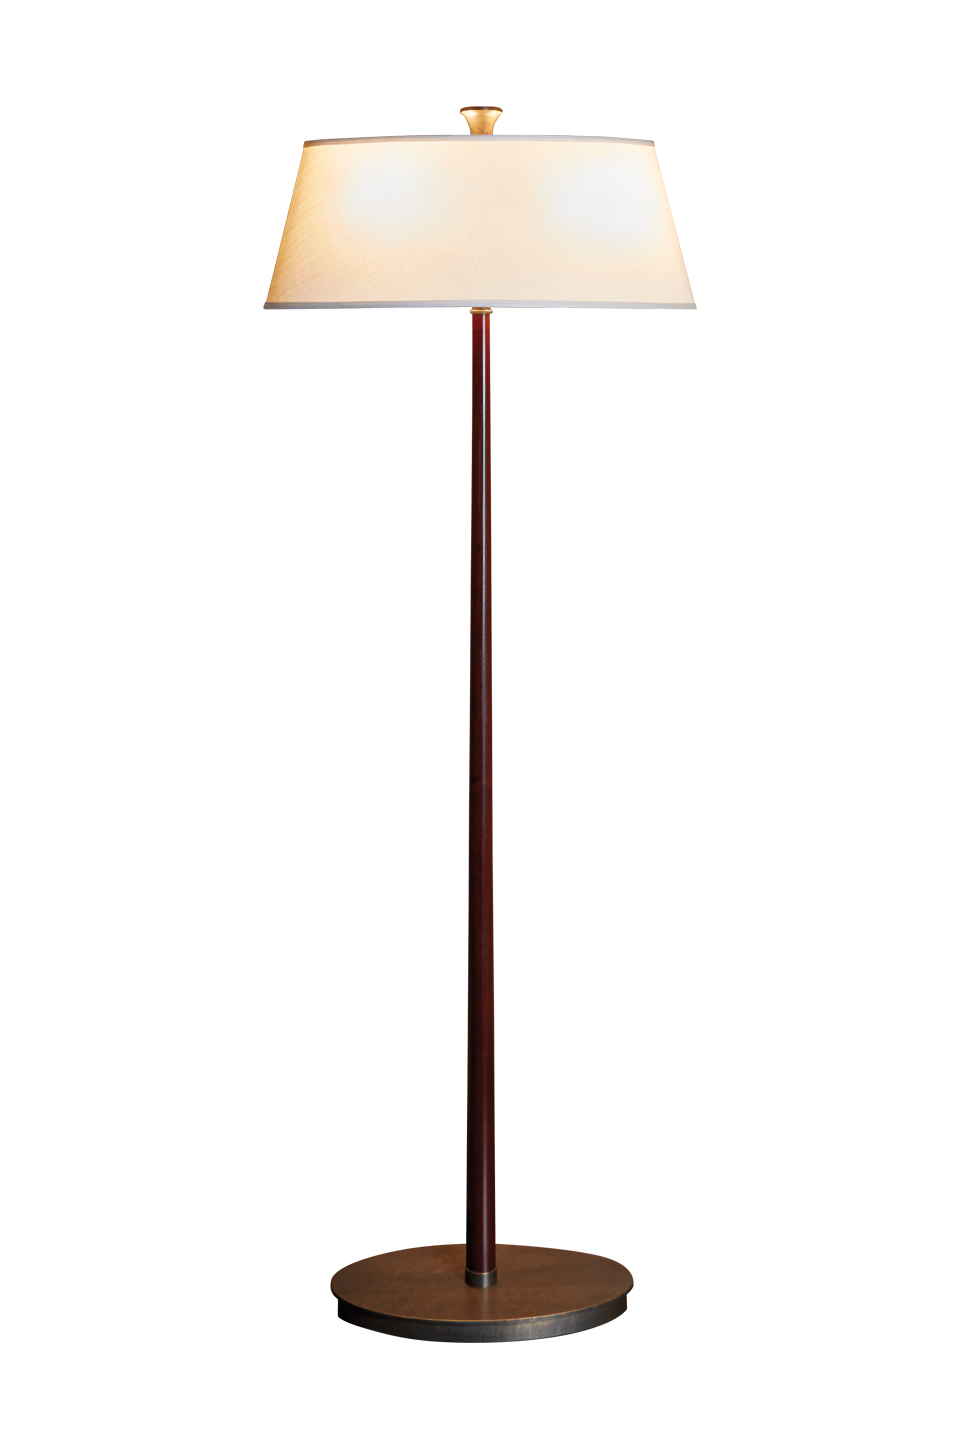 Rita — напольная светодиодная лампа с деревянным каркасом, бронзовым основанием и льняным, хлопковым или сшитым вручную шелковым абажуром из каталога Promemoria | Promemoria